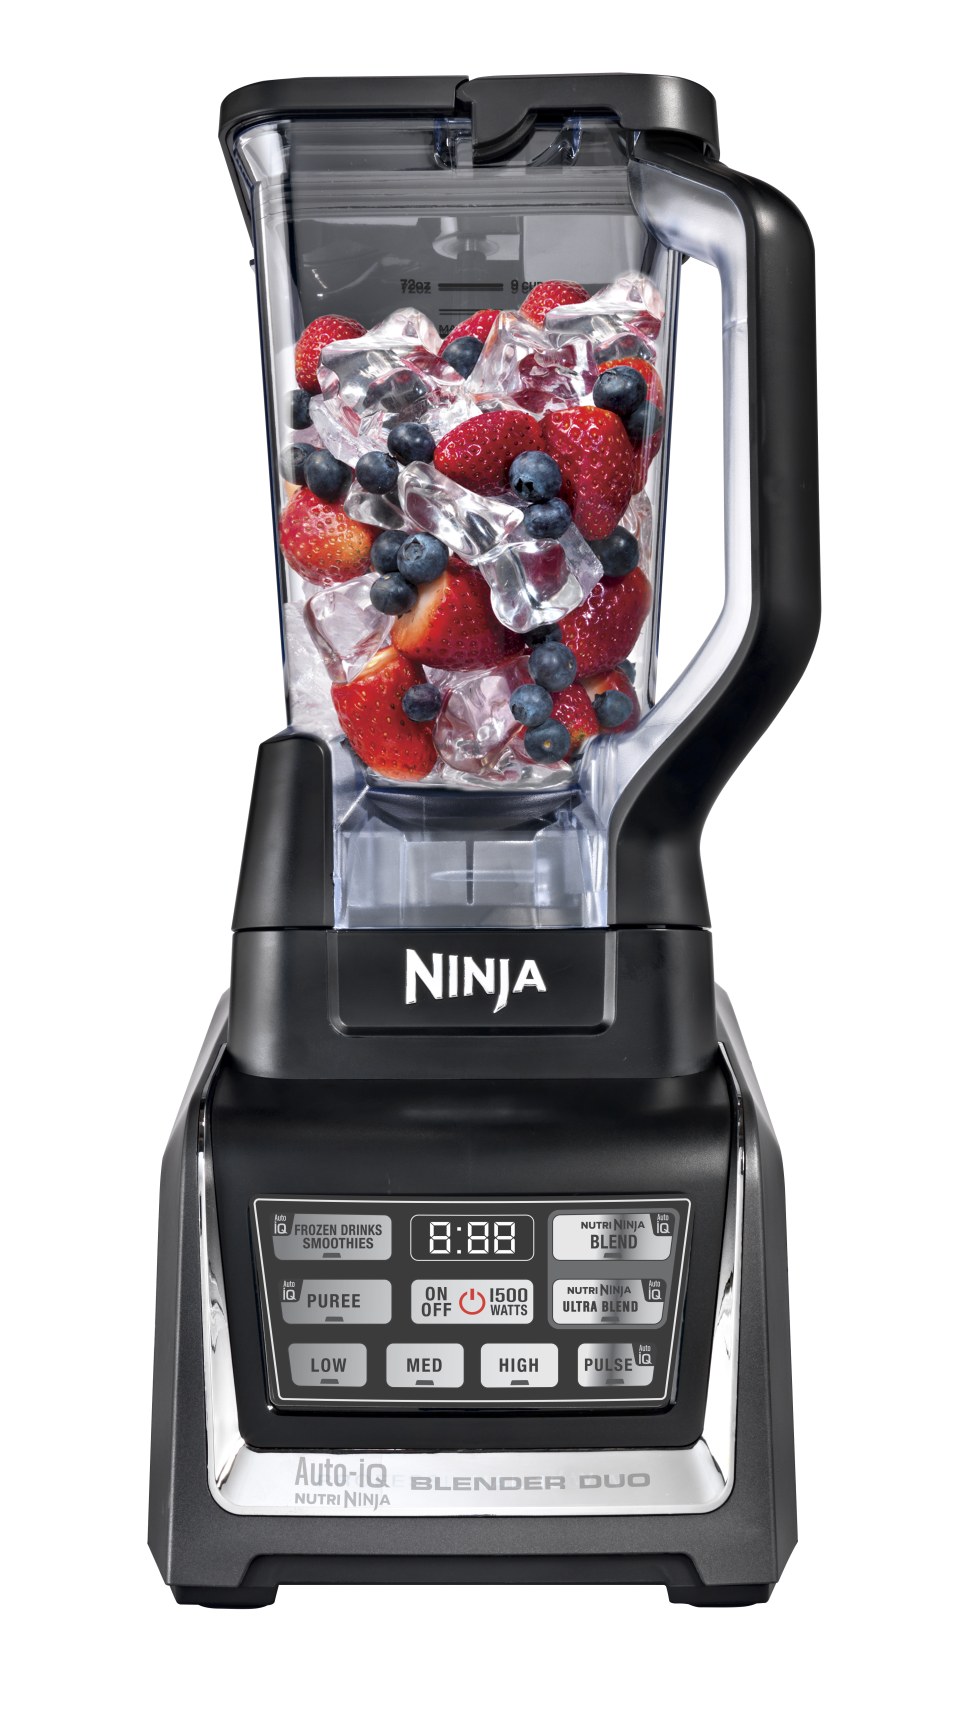 Ninja Nutri BL492UK 1200W Blender Duo with Auto iQ 220 Volts